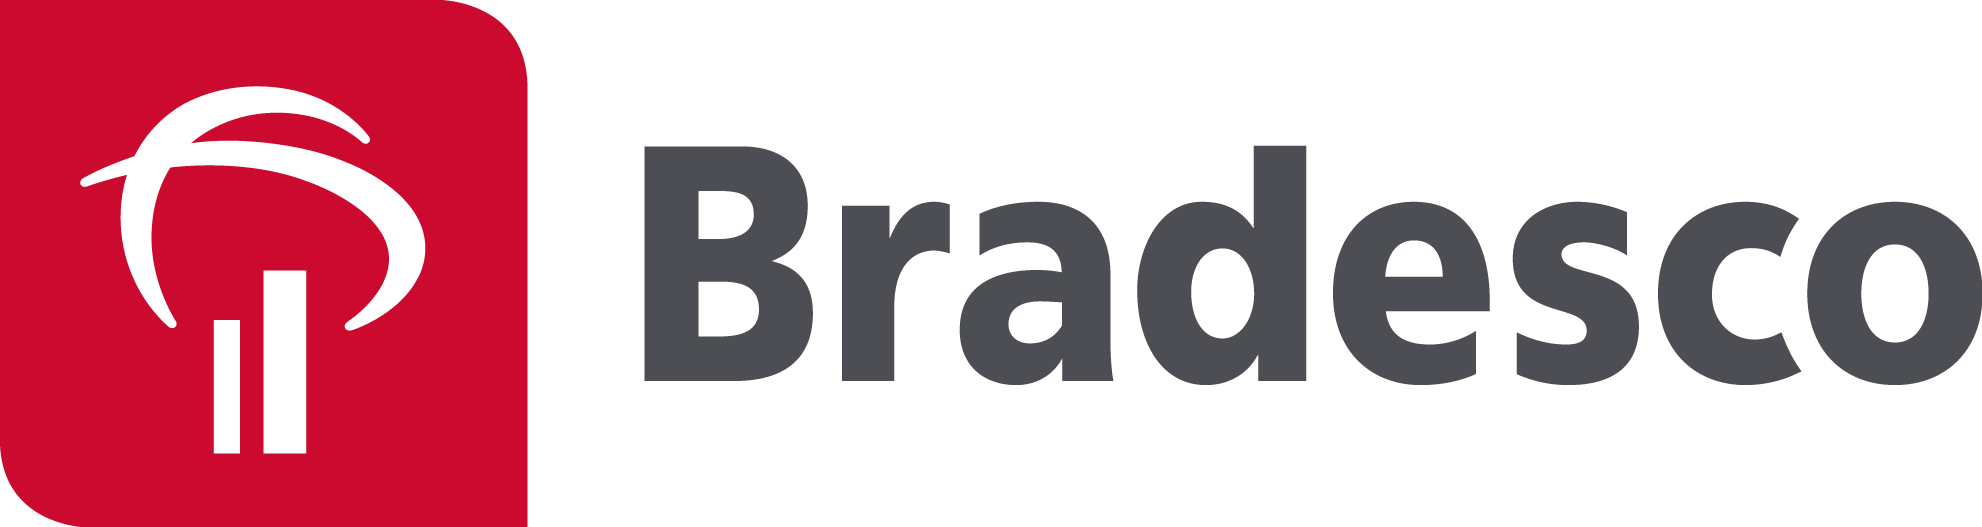 Logo Bradesco  - Banco Bradesco Vector, Transparent background PNG HD thumbnail